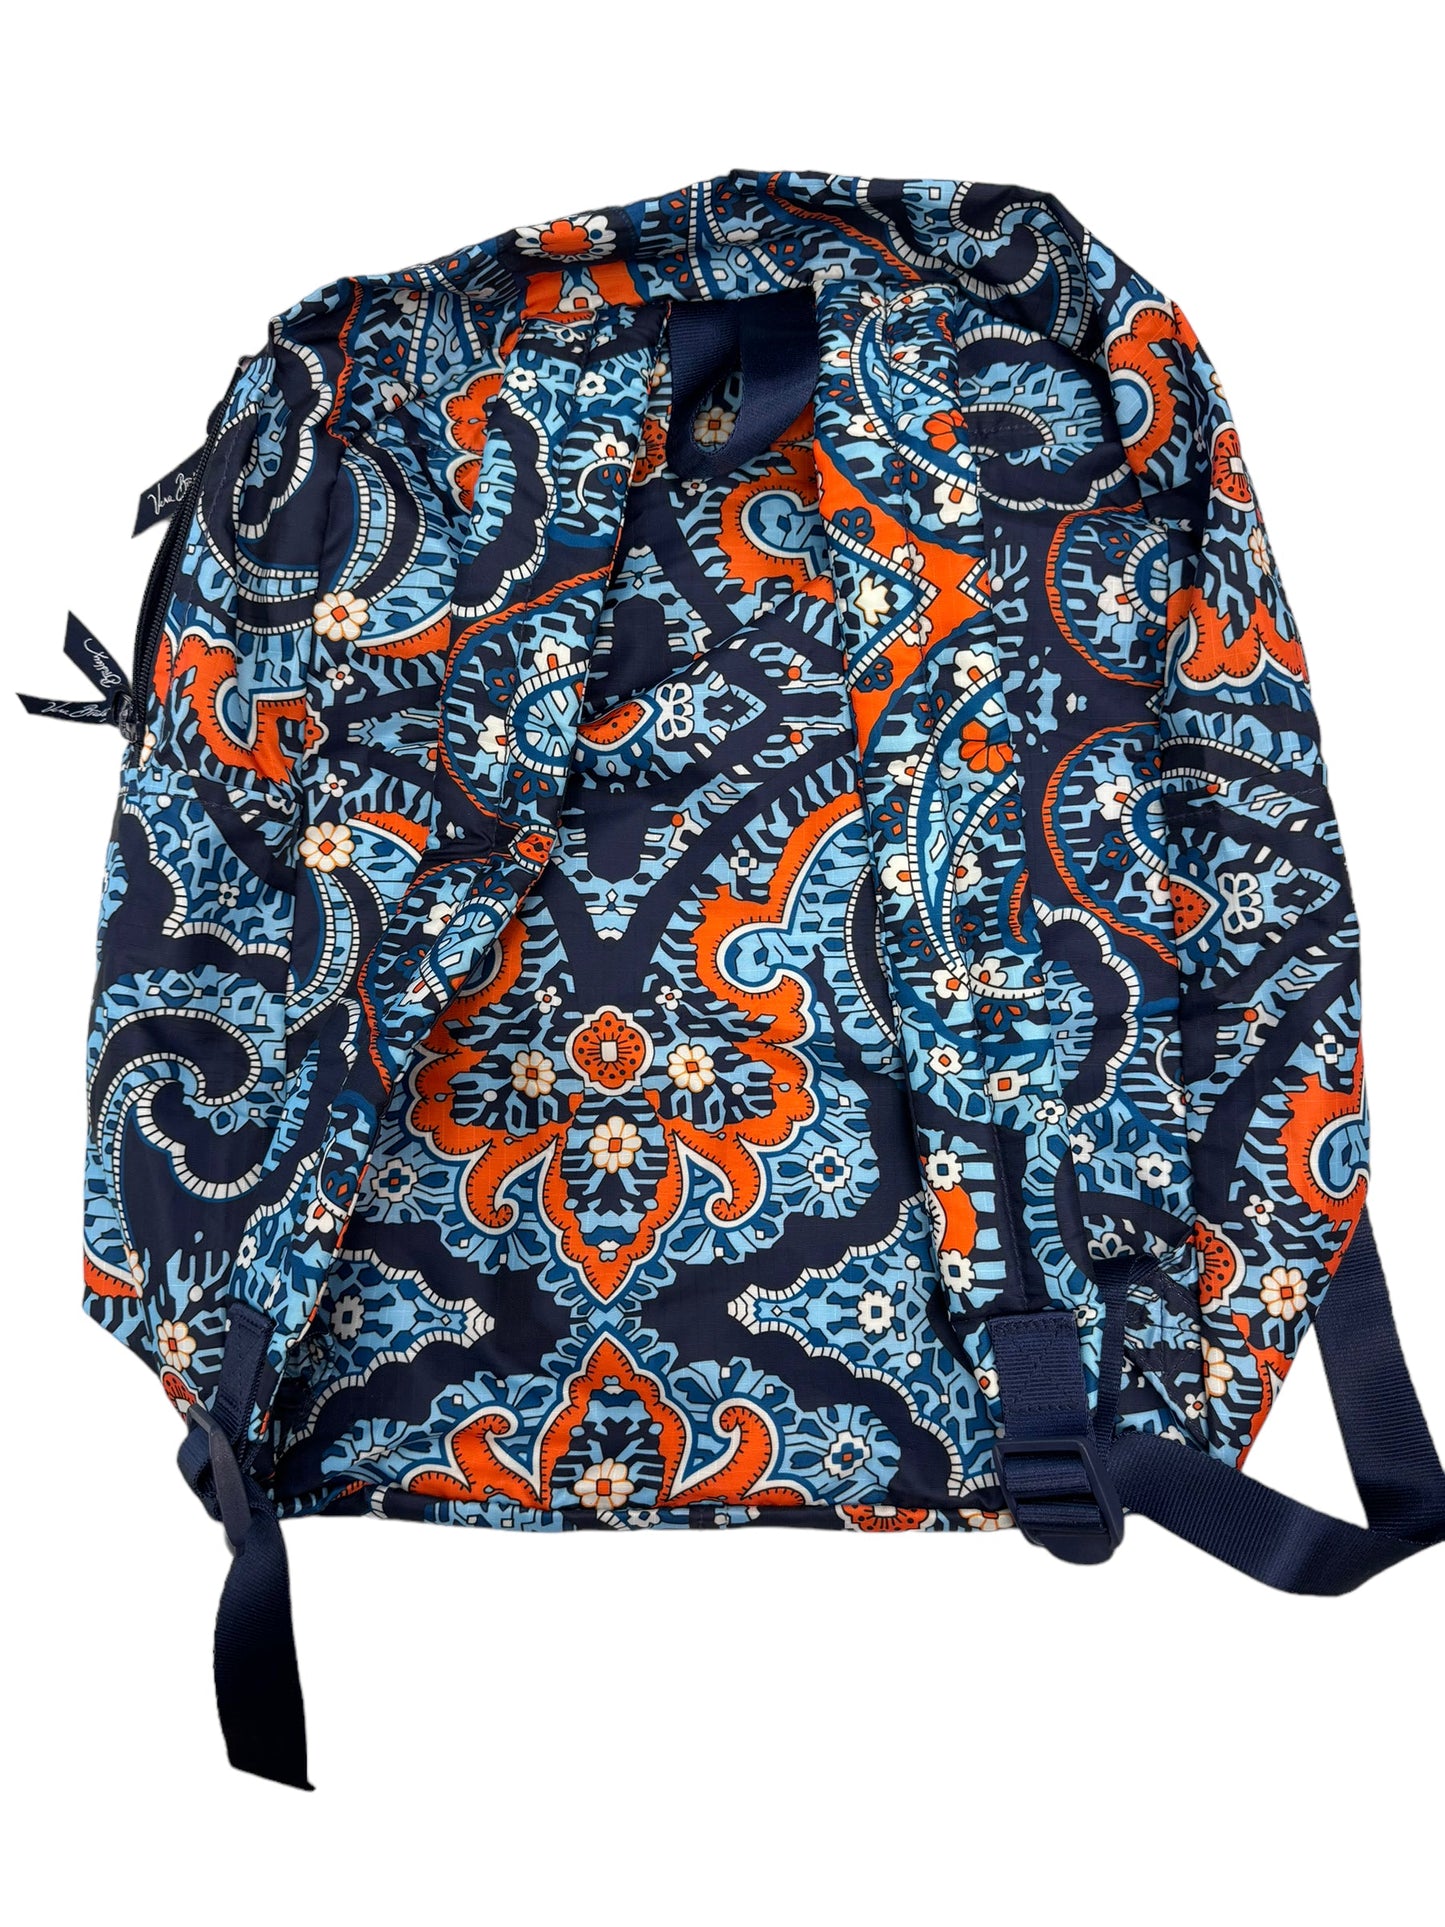 Blue Backpack Vera Bradley, Size Large